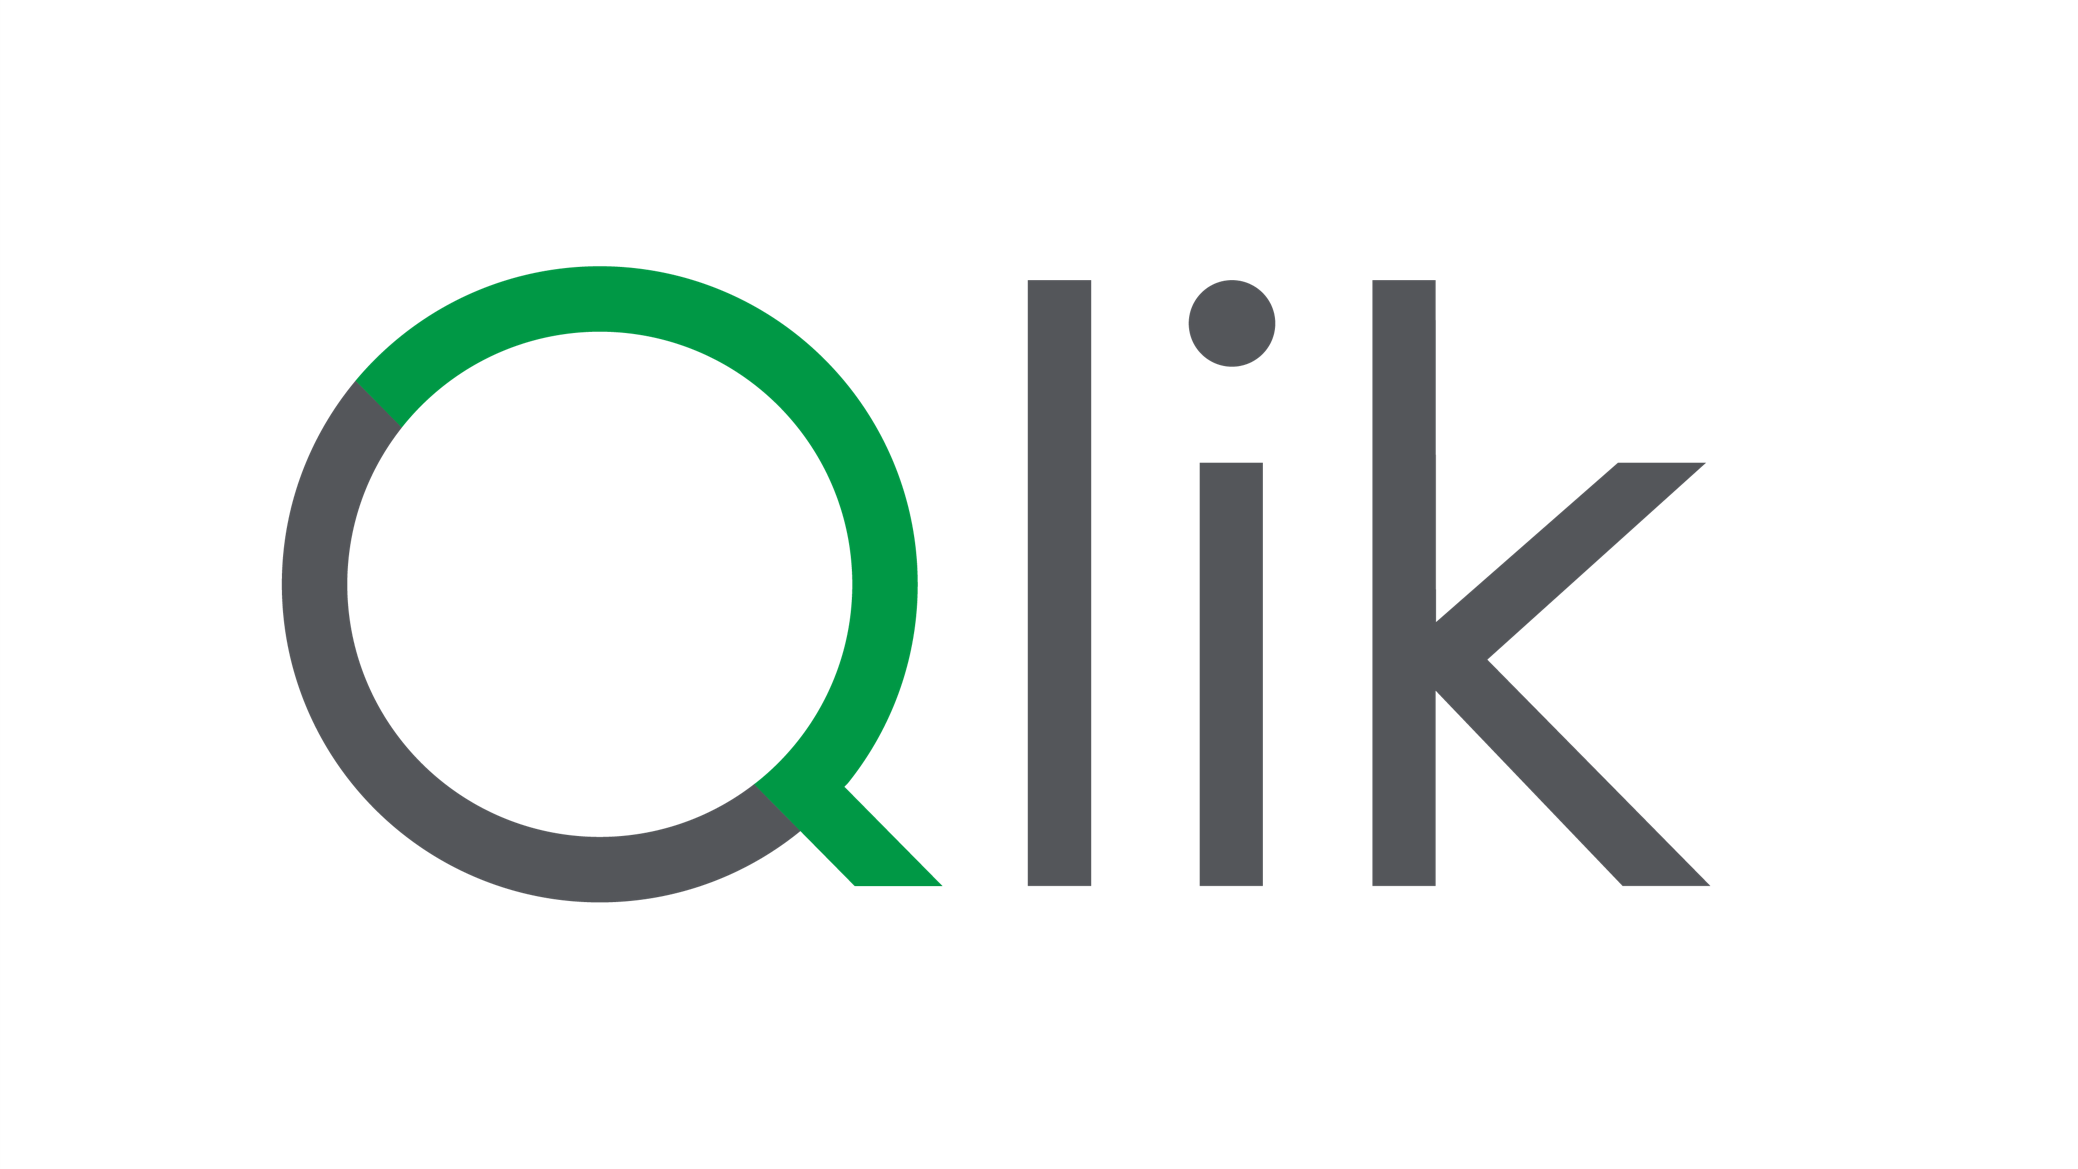 Qlik Website Logo